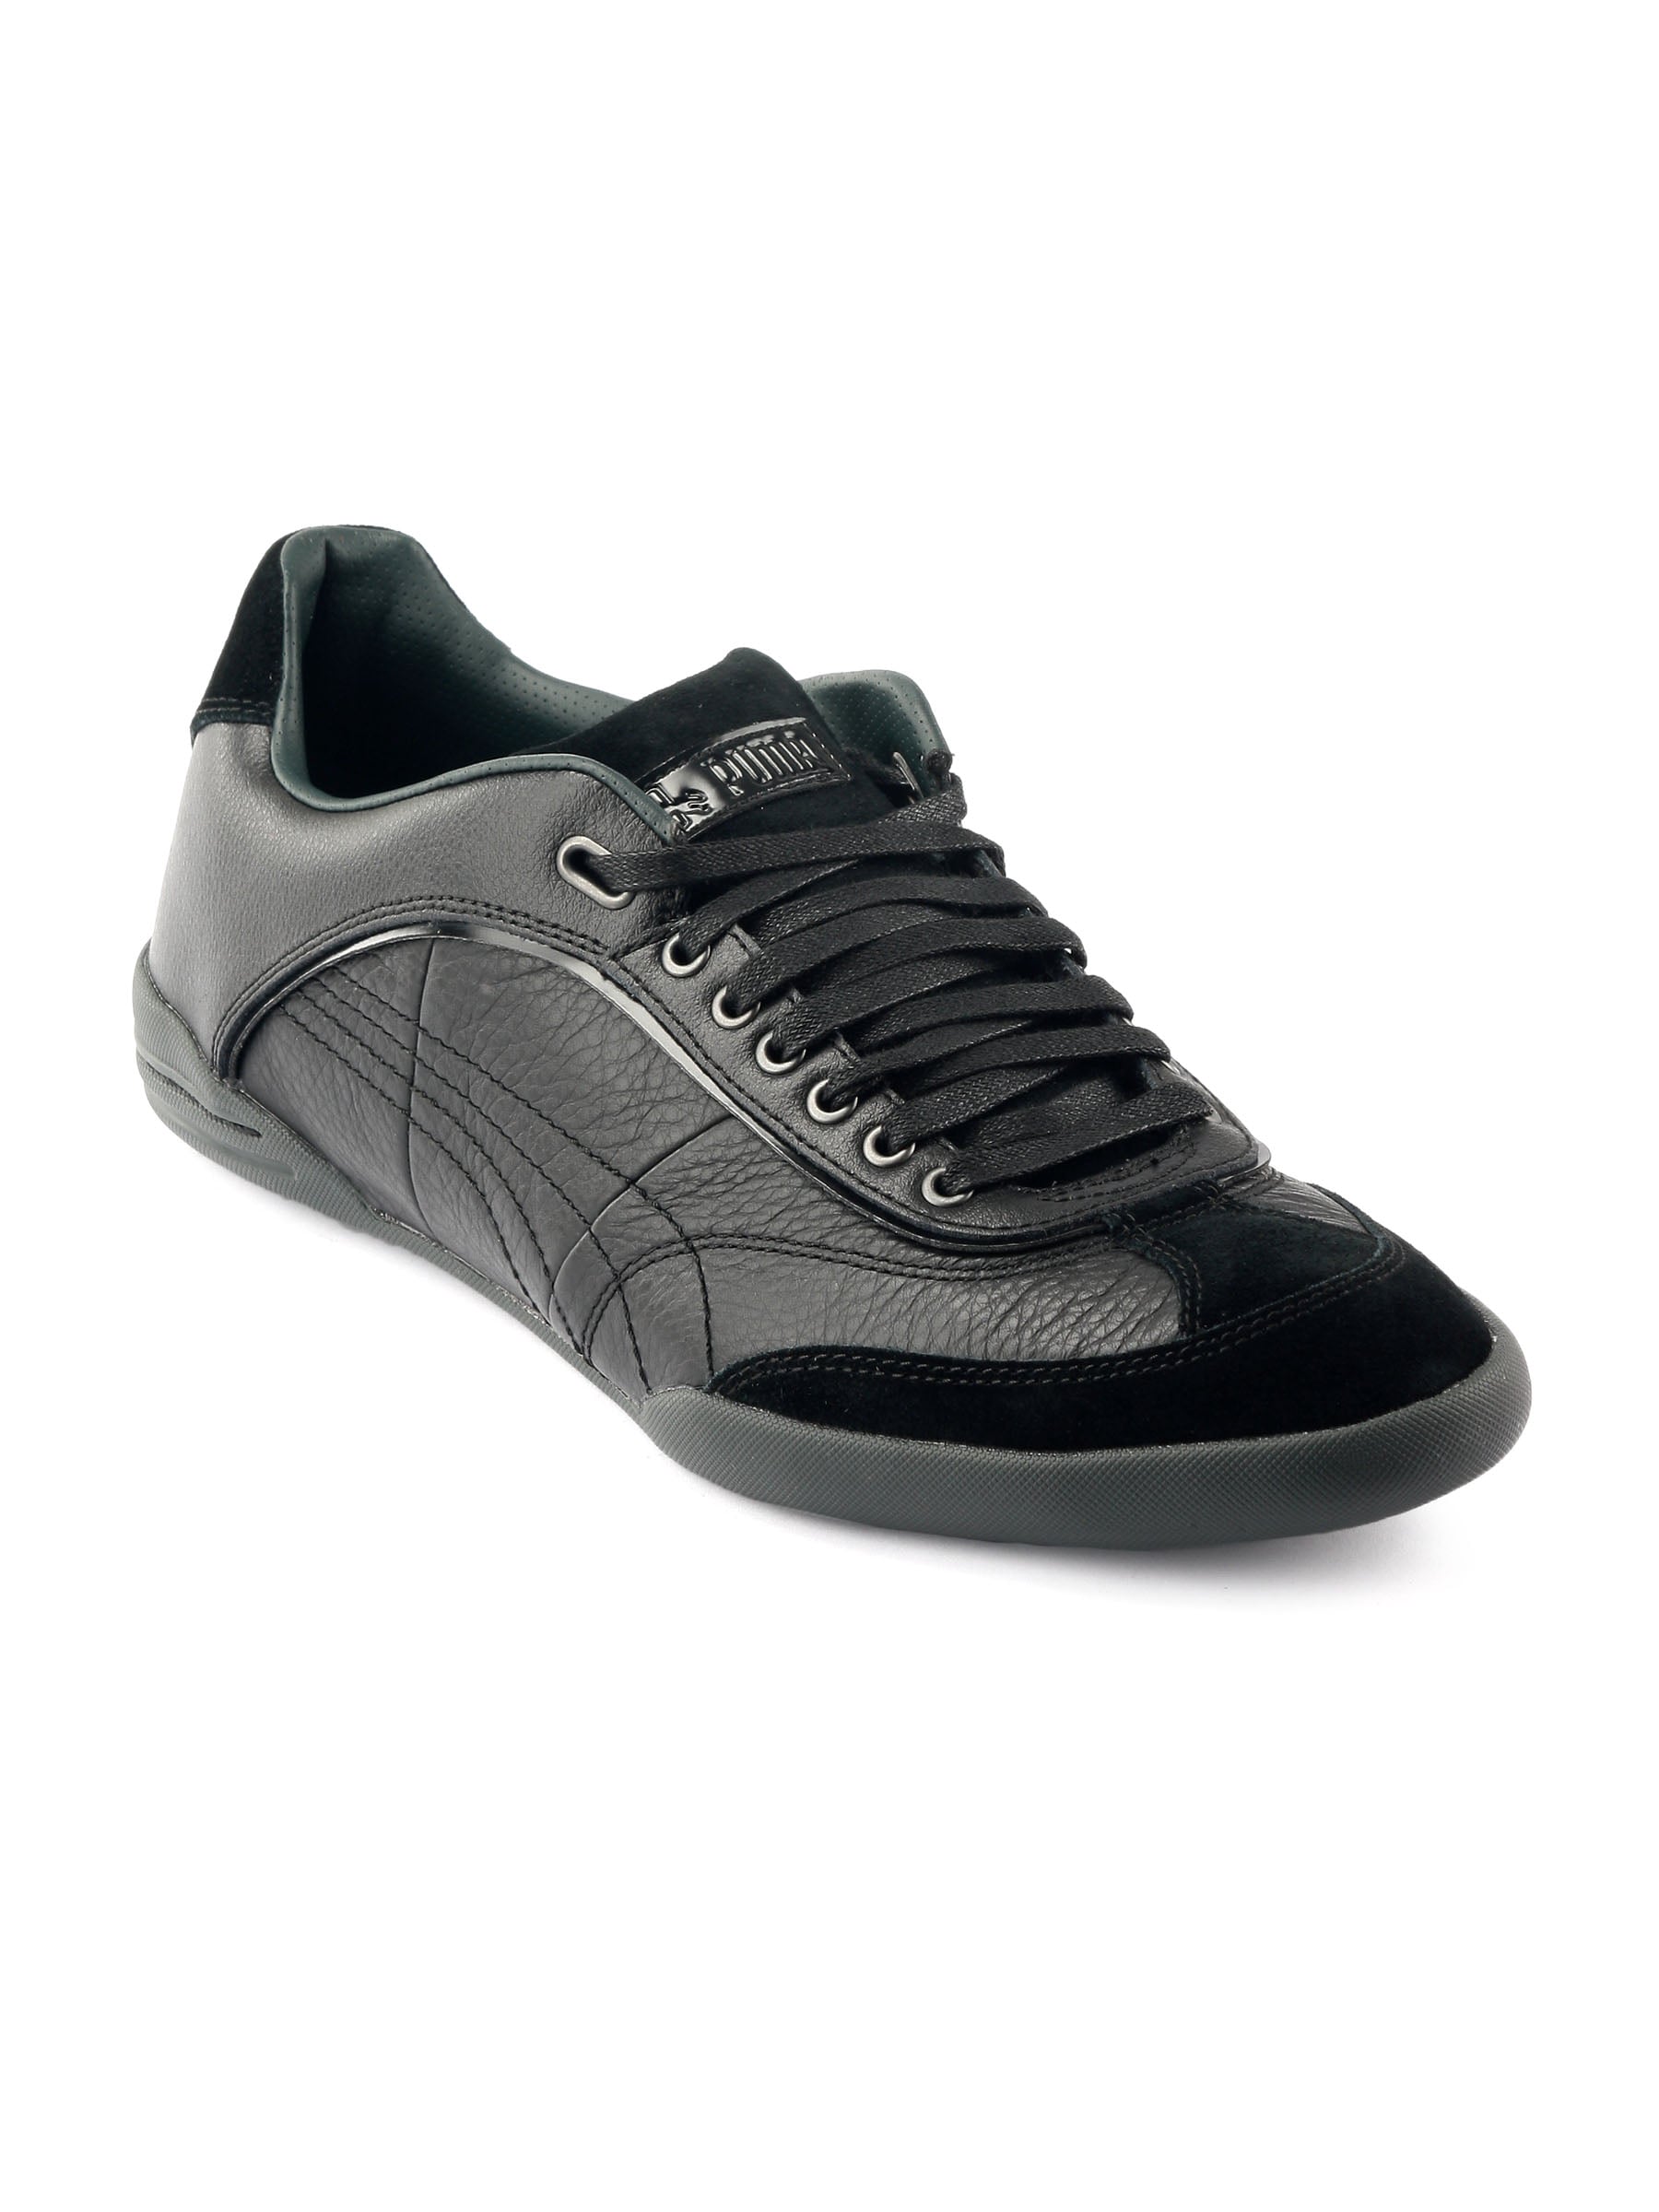 Puma Men Standpunkt Classic Black Casual Shoes